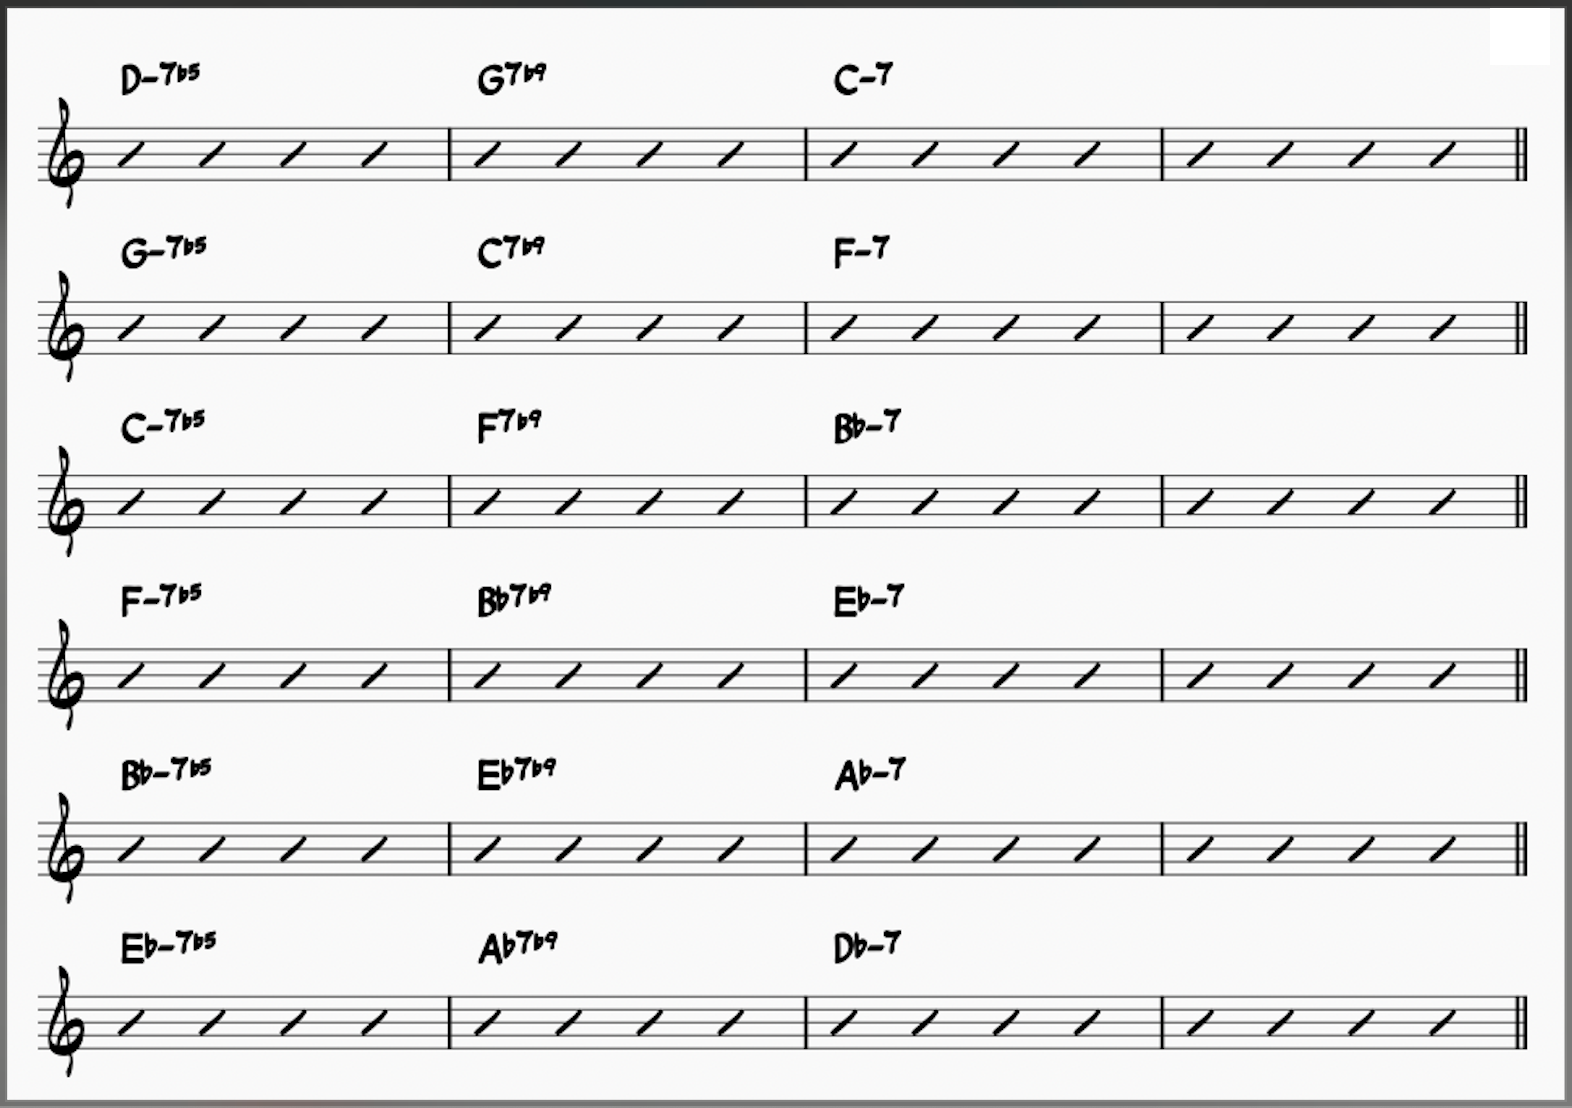 minor iiø-Vs in six keys: C- to Db- 